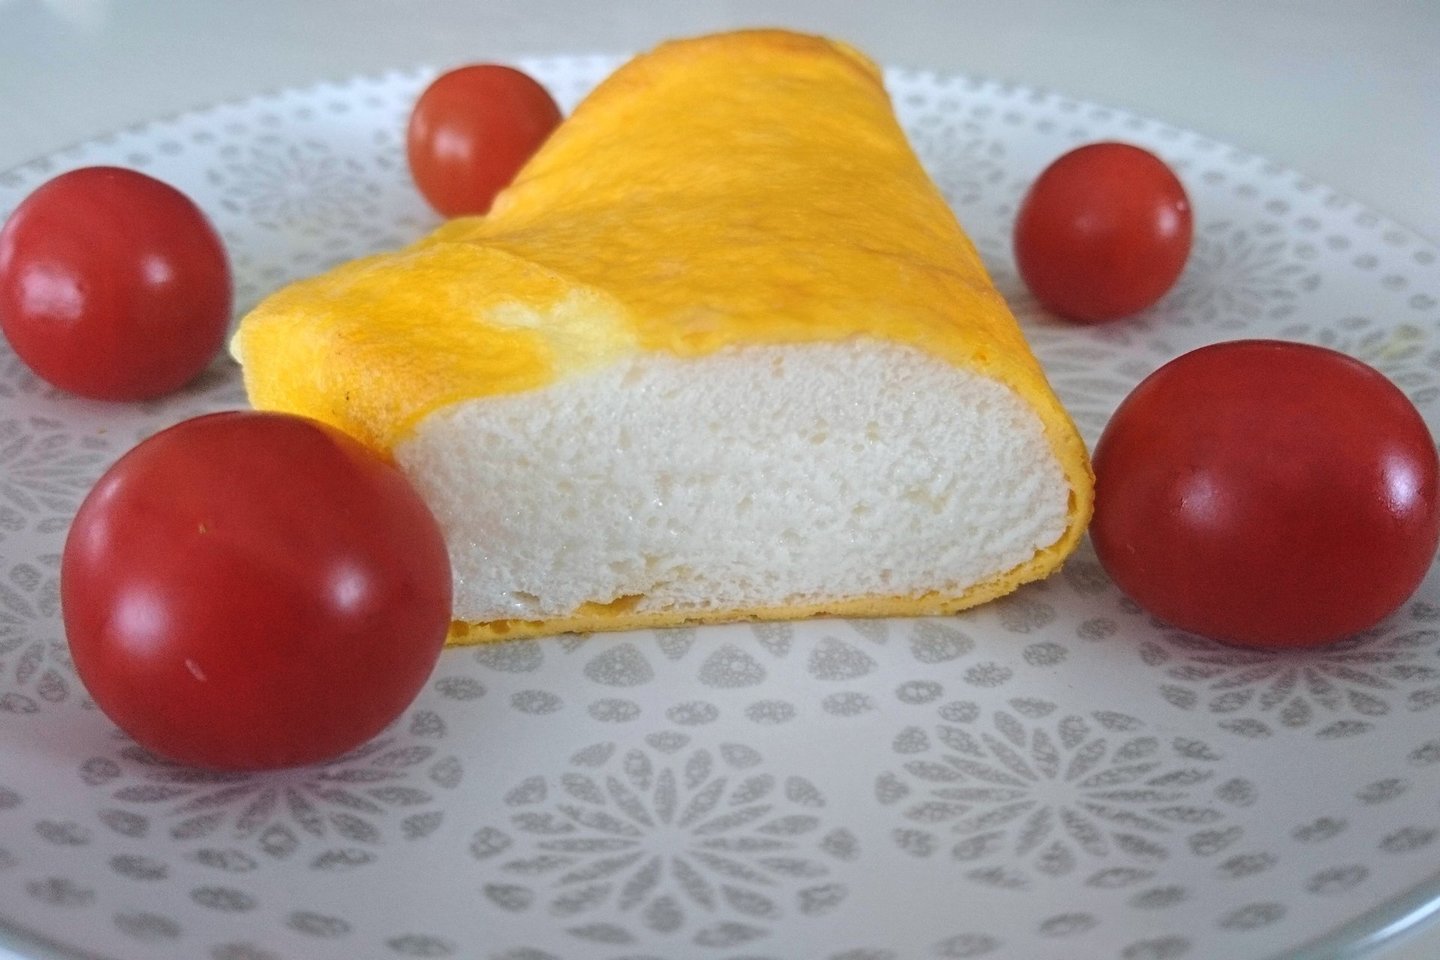  Prancūziškas omletas.<br> Nuotr. iš lrytas.lt archyvo.